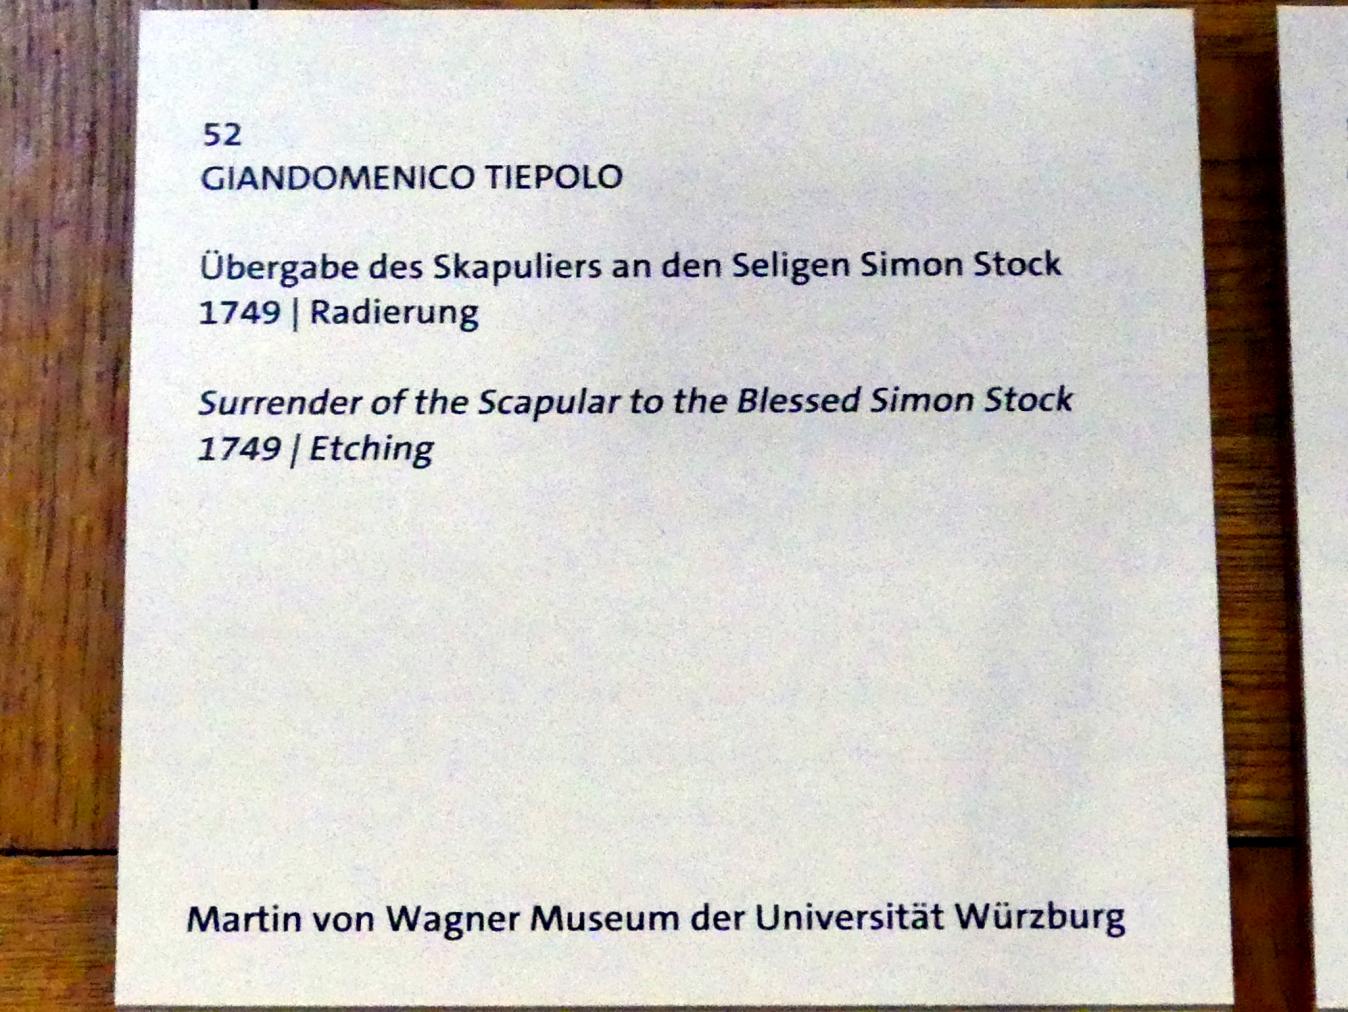 Giovanni Domenico Tiepolo (1743–1785), Übergabe des Skapuliers an den Seligen Simon Stock, Würzburg, Martin von Wagner Museum, Ausstellung "Tiepolo und seine Zeit in Würzburg" vom 31.10.2020-15.07.2021, Saal 2, 1749, Bild 2/3